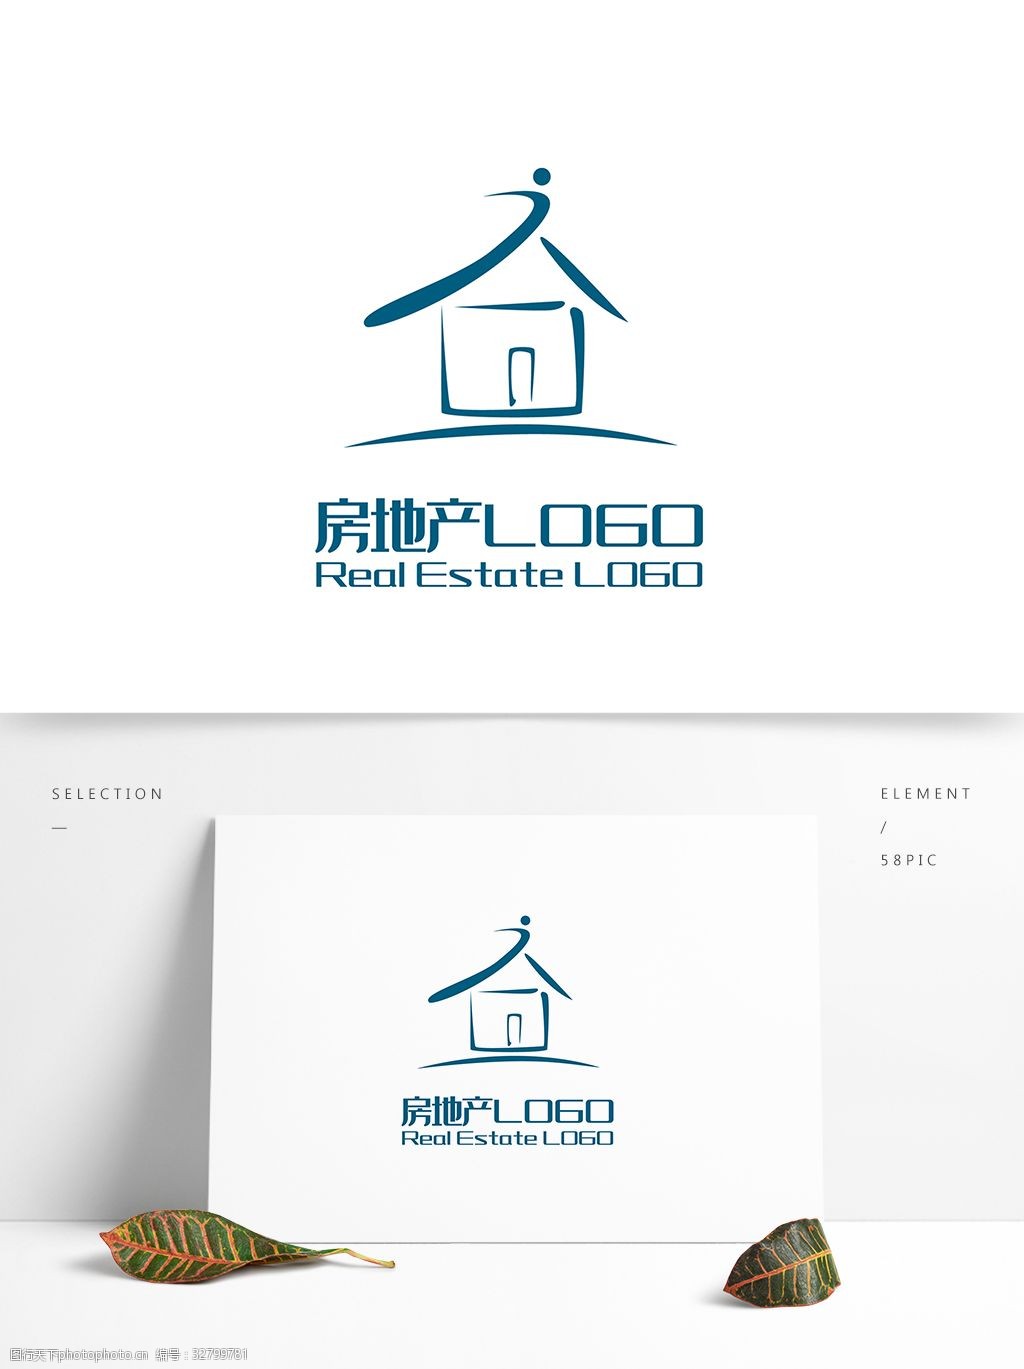 原创 可商用 ai 创意 简约 j 字体设计 房子 房地产 logo 标志